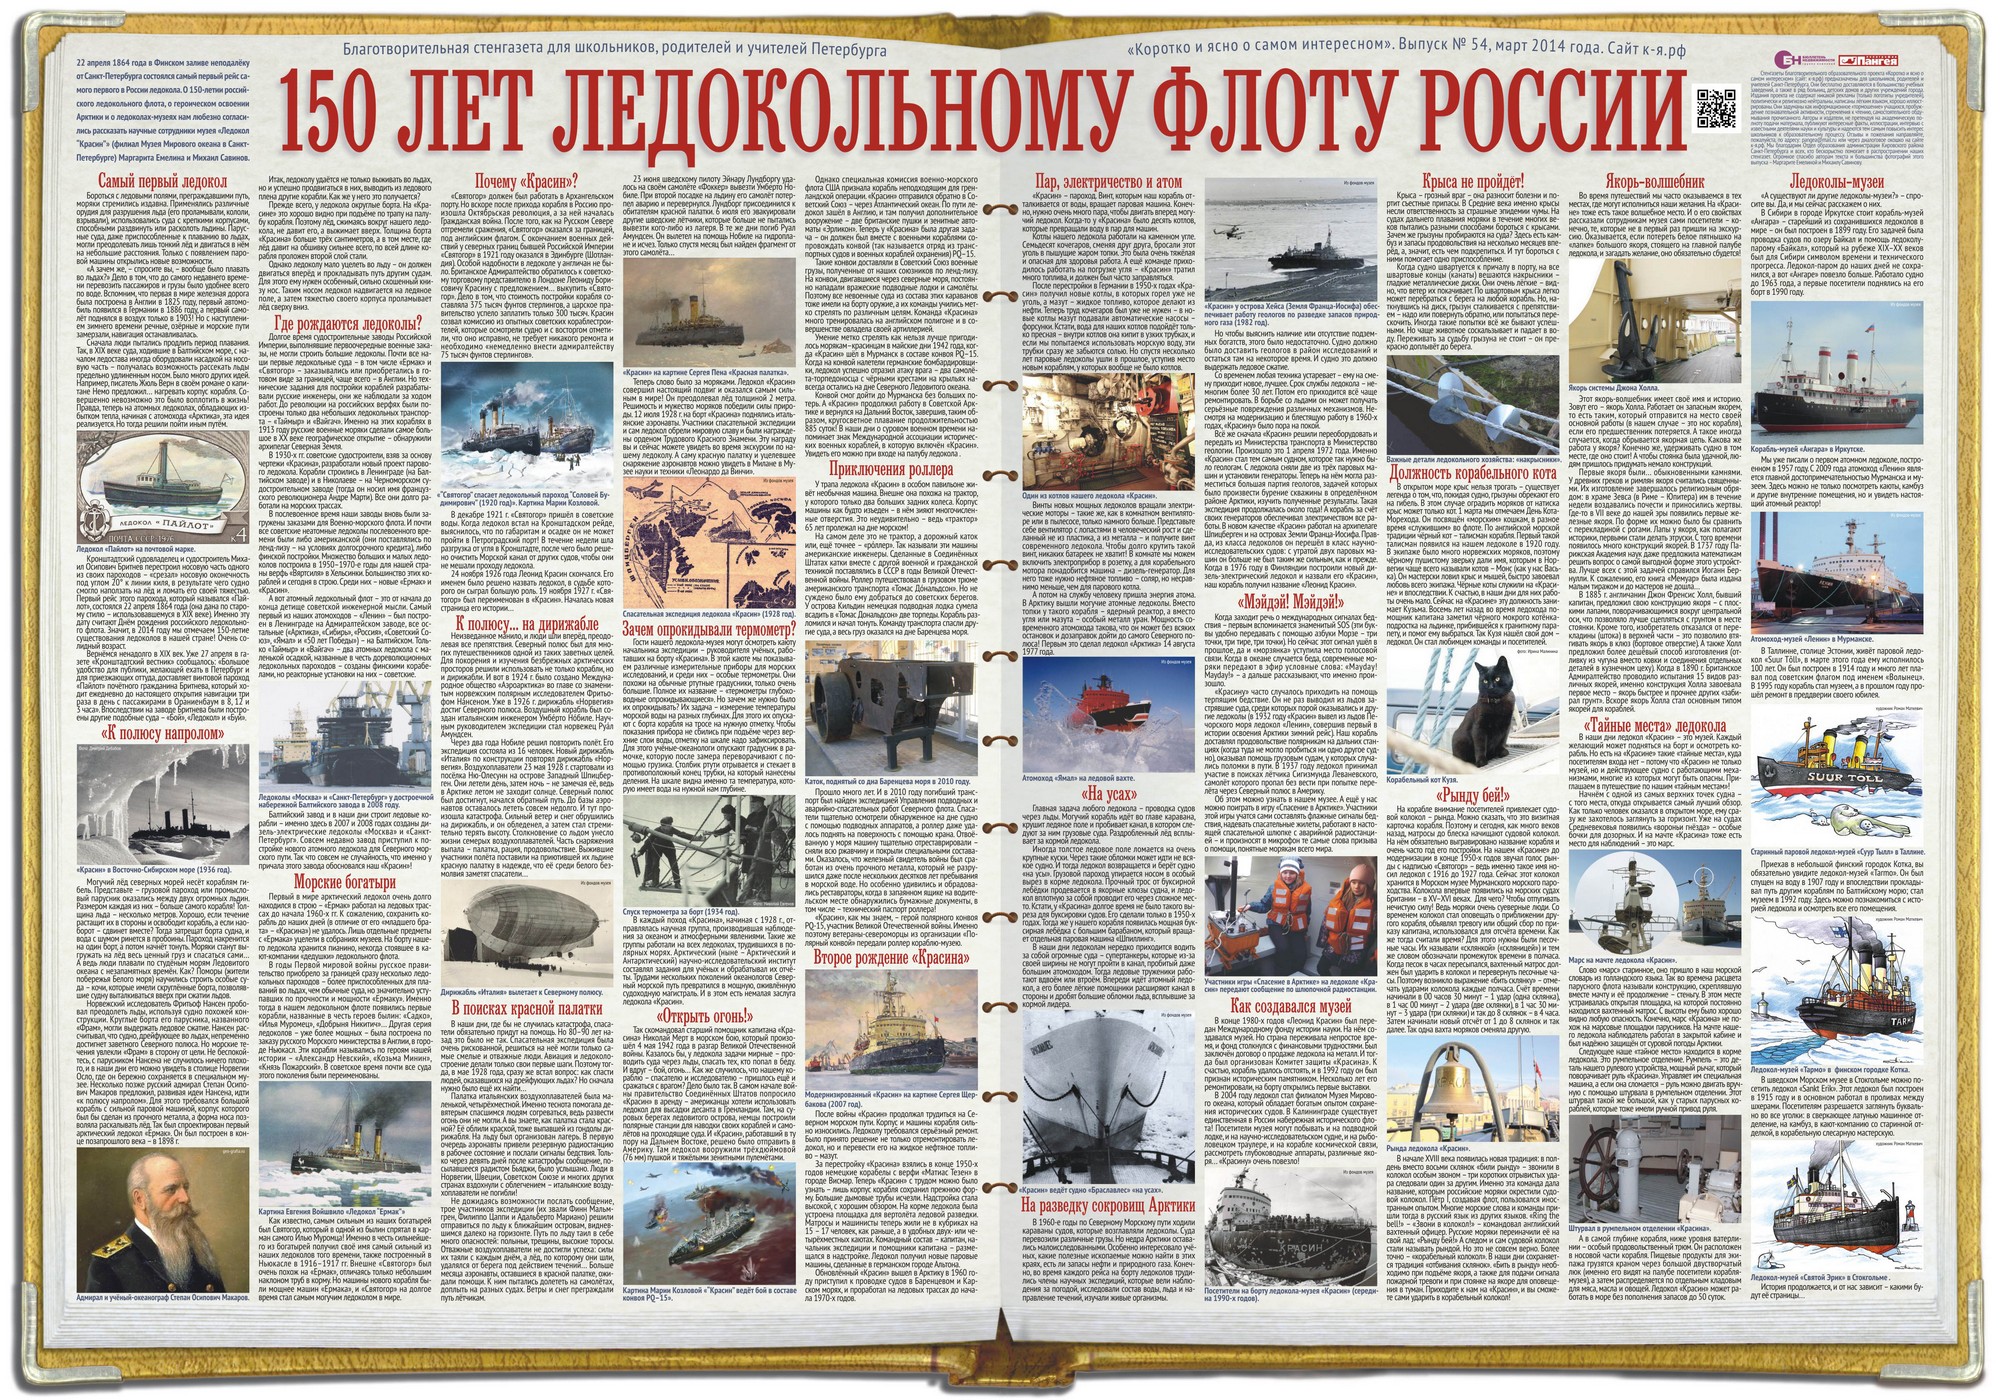 54. 150 лет ледокольному флоту России